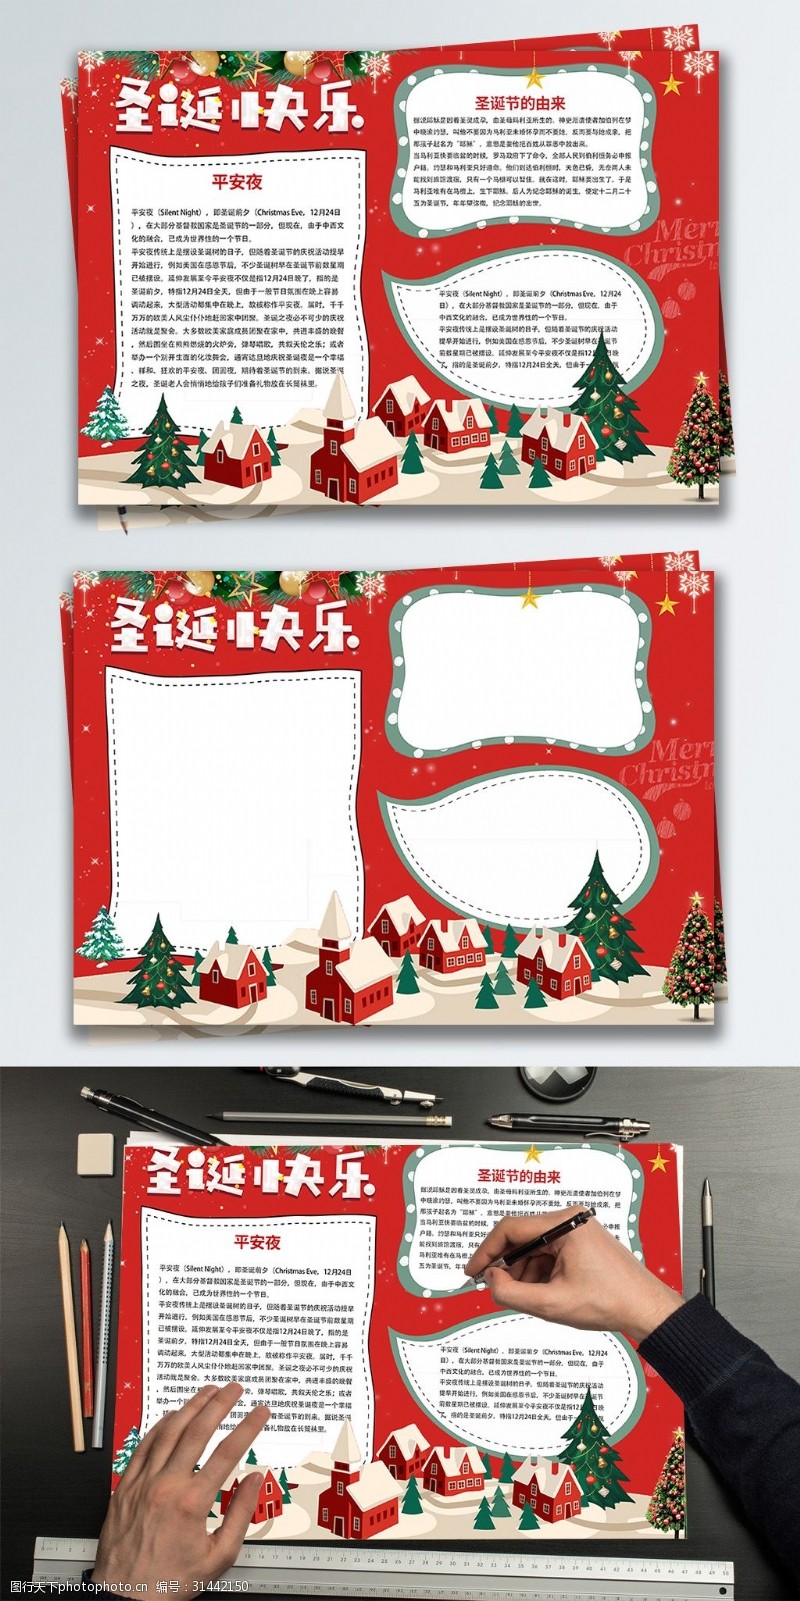 手抄报模板红色简约创意圣诞节日手抄报设计PSD模板